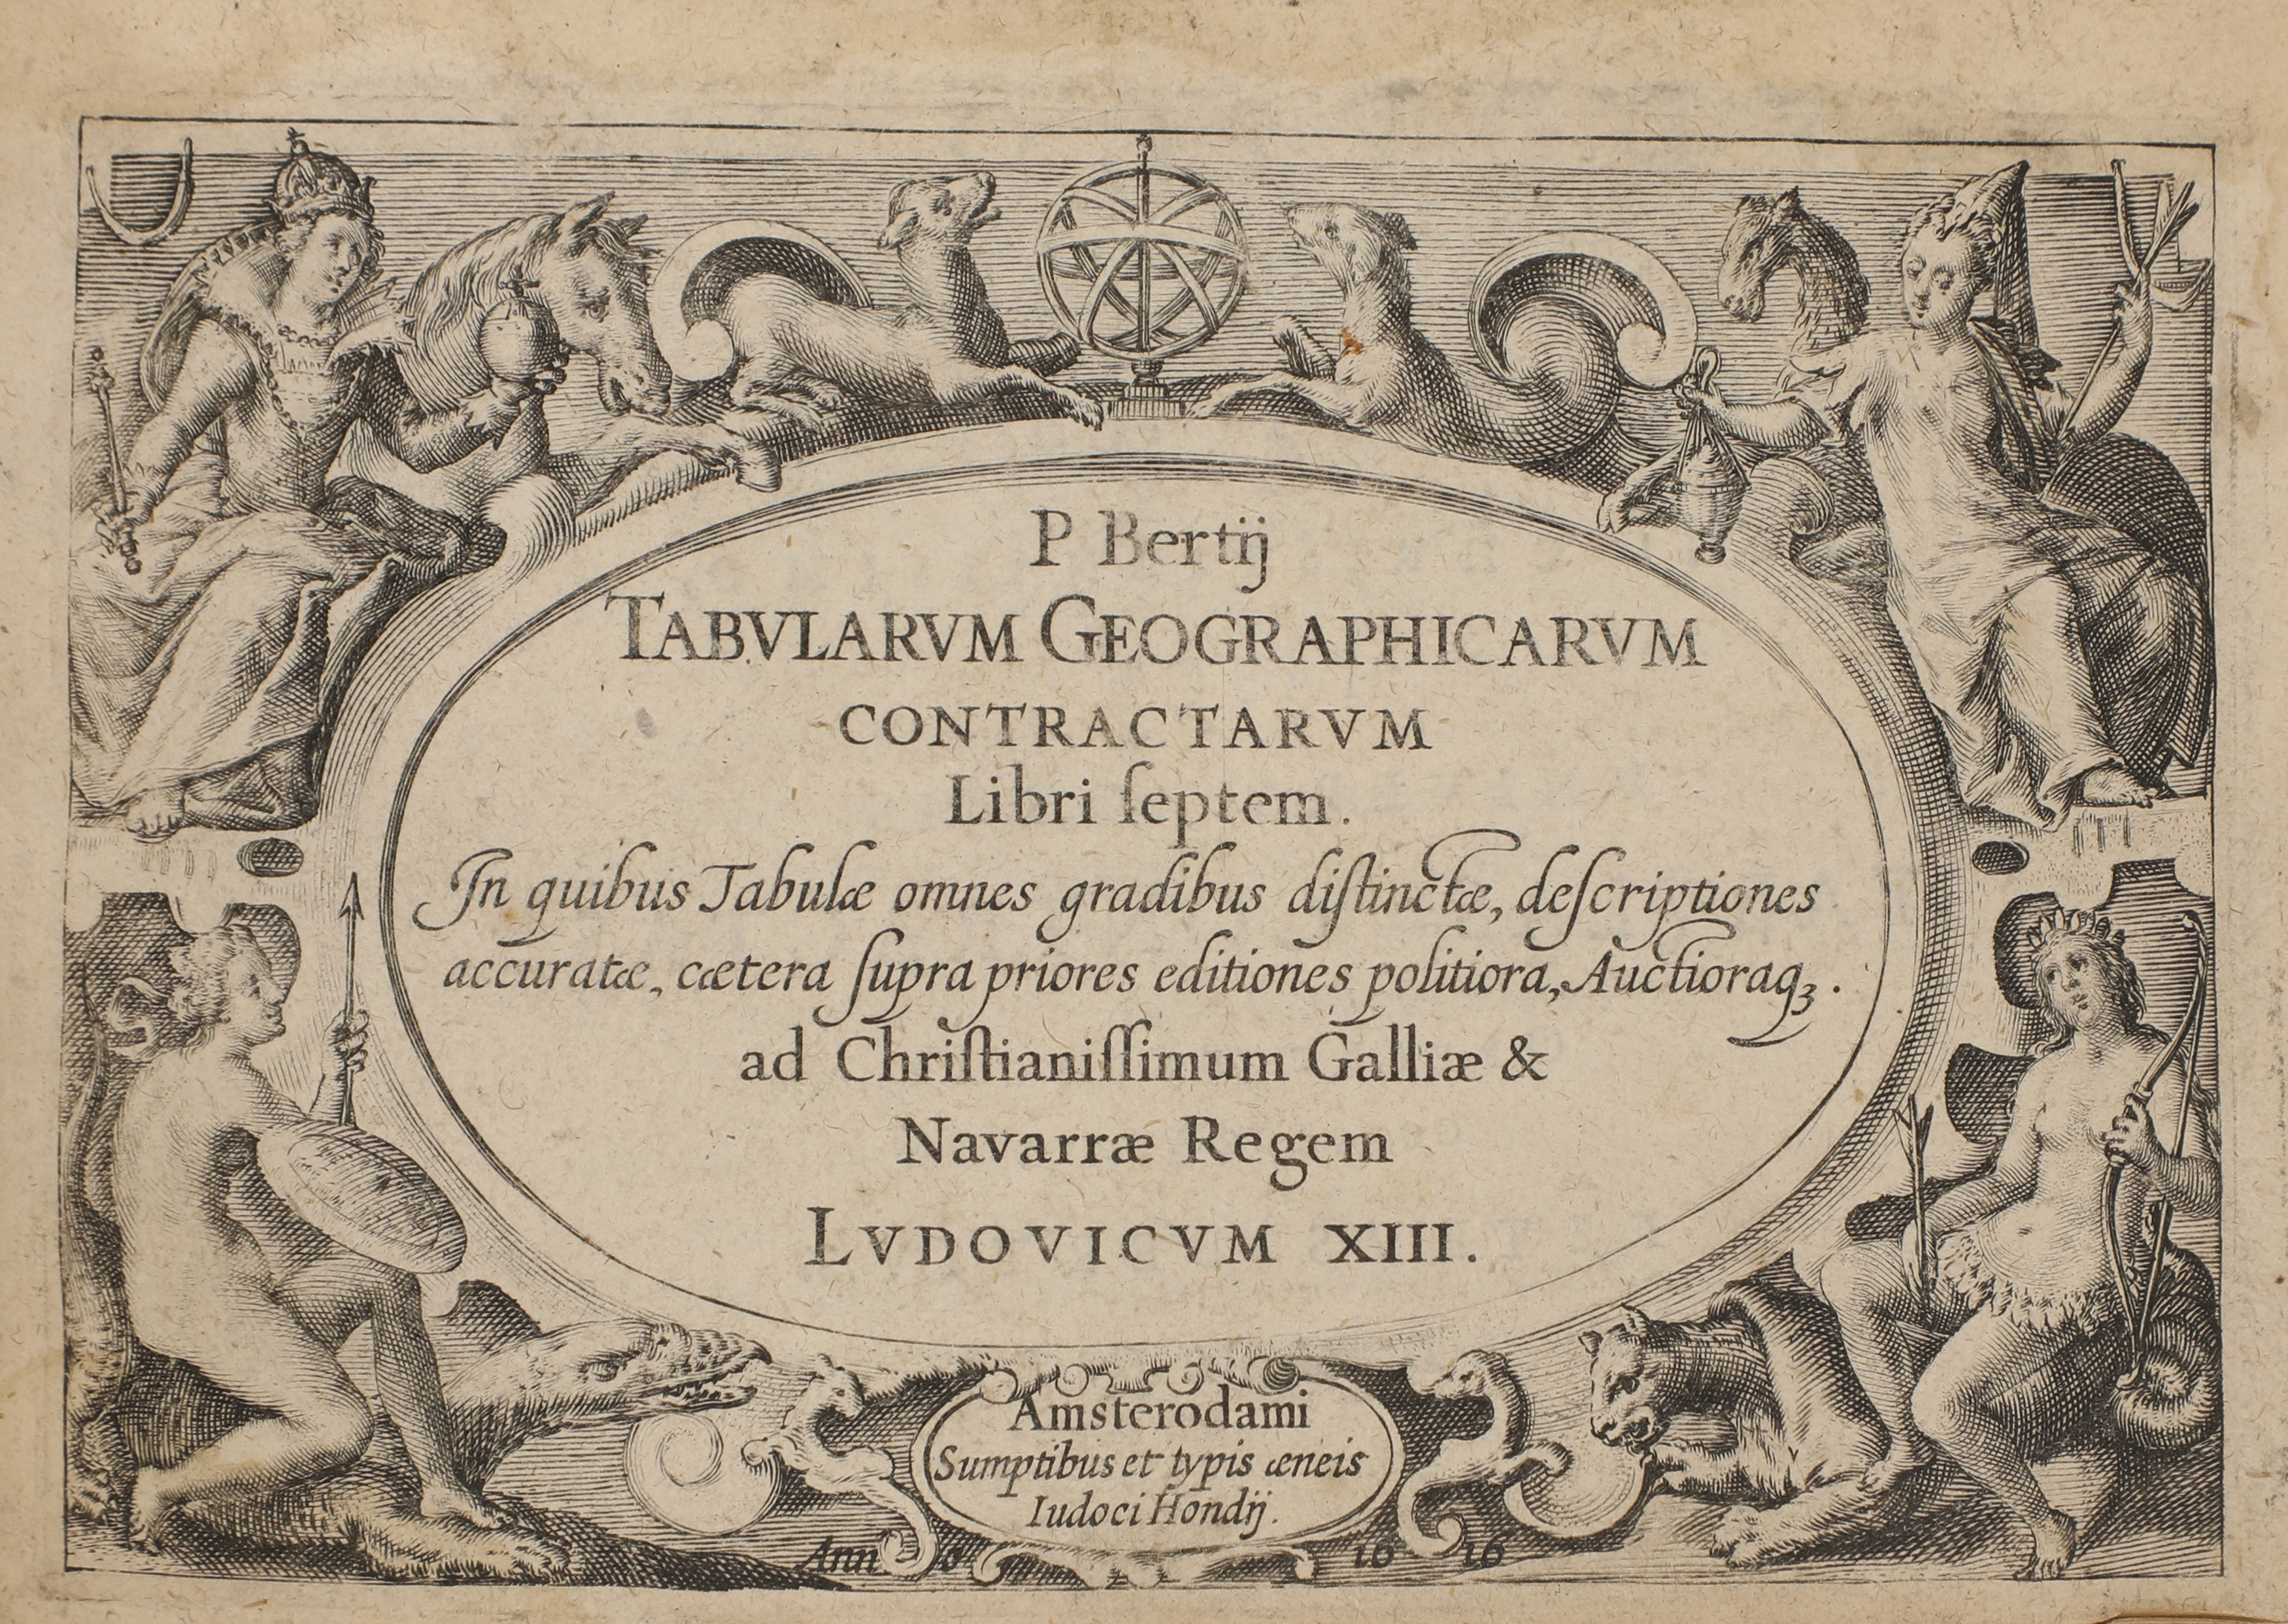 ATLASES: [BERTIUS, Petrus (1565-1629)]. Tabularum geographicarum contractarum libri septem (£5,000-7,000)